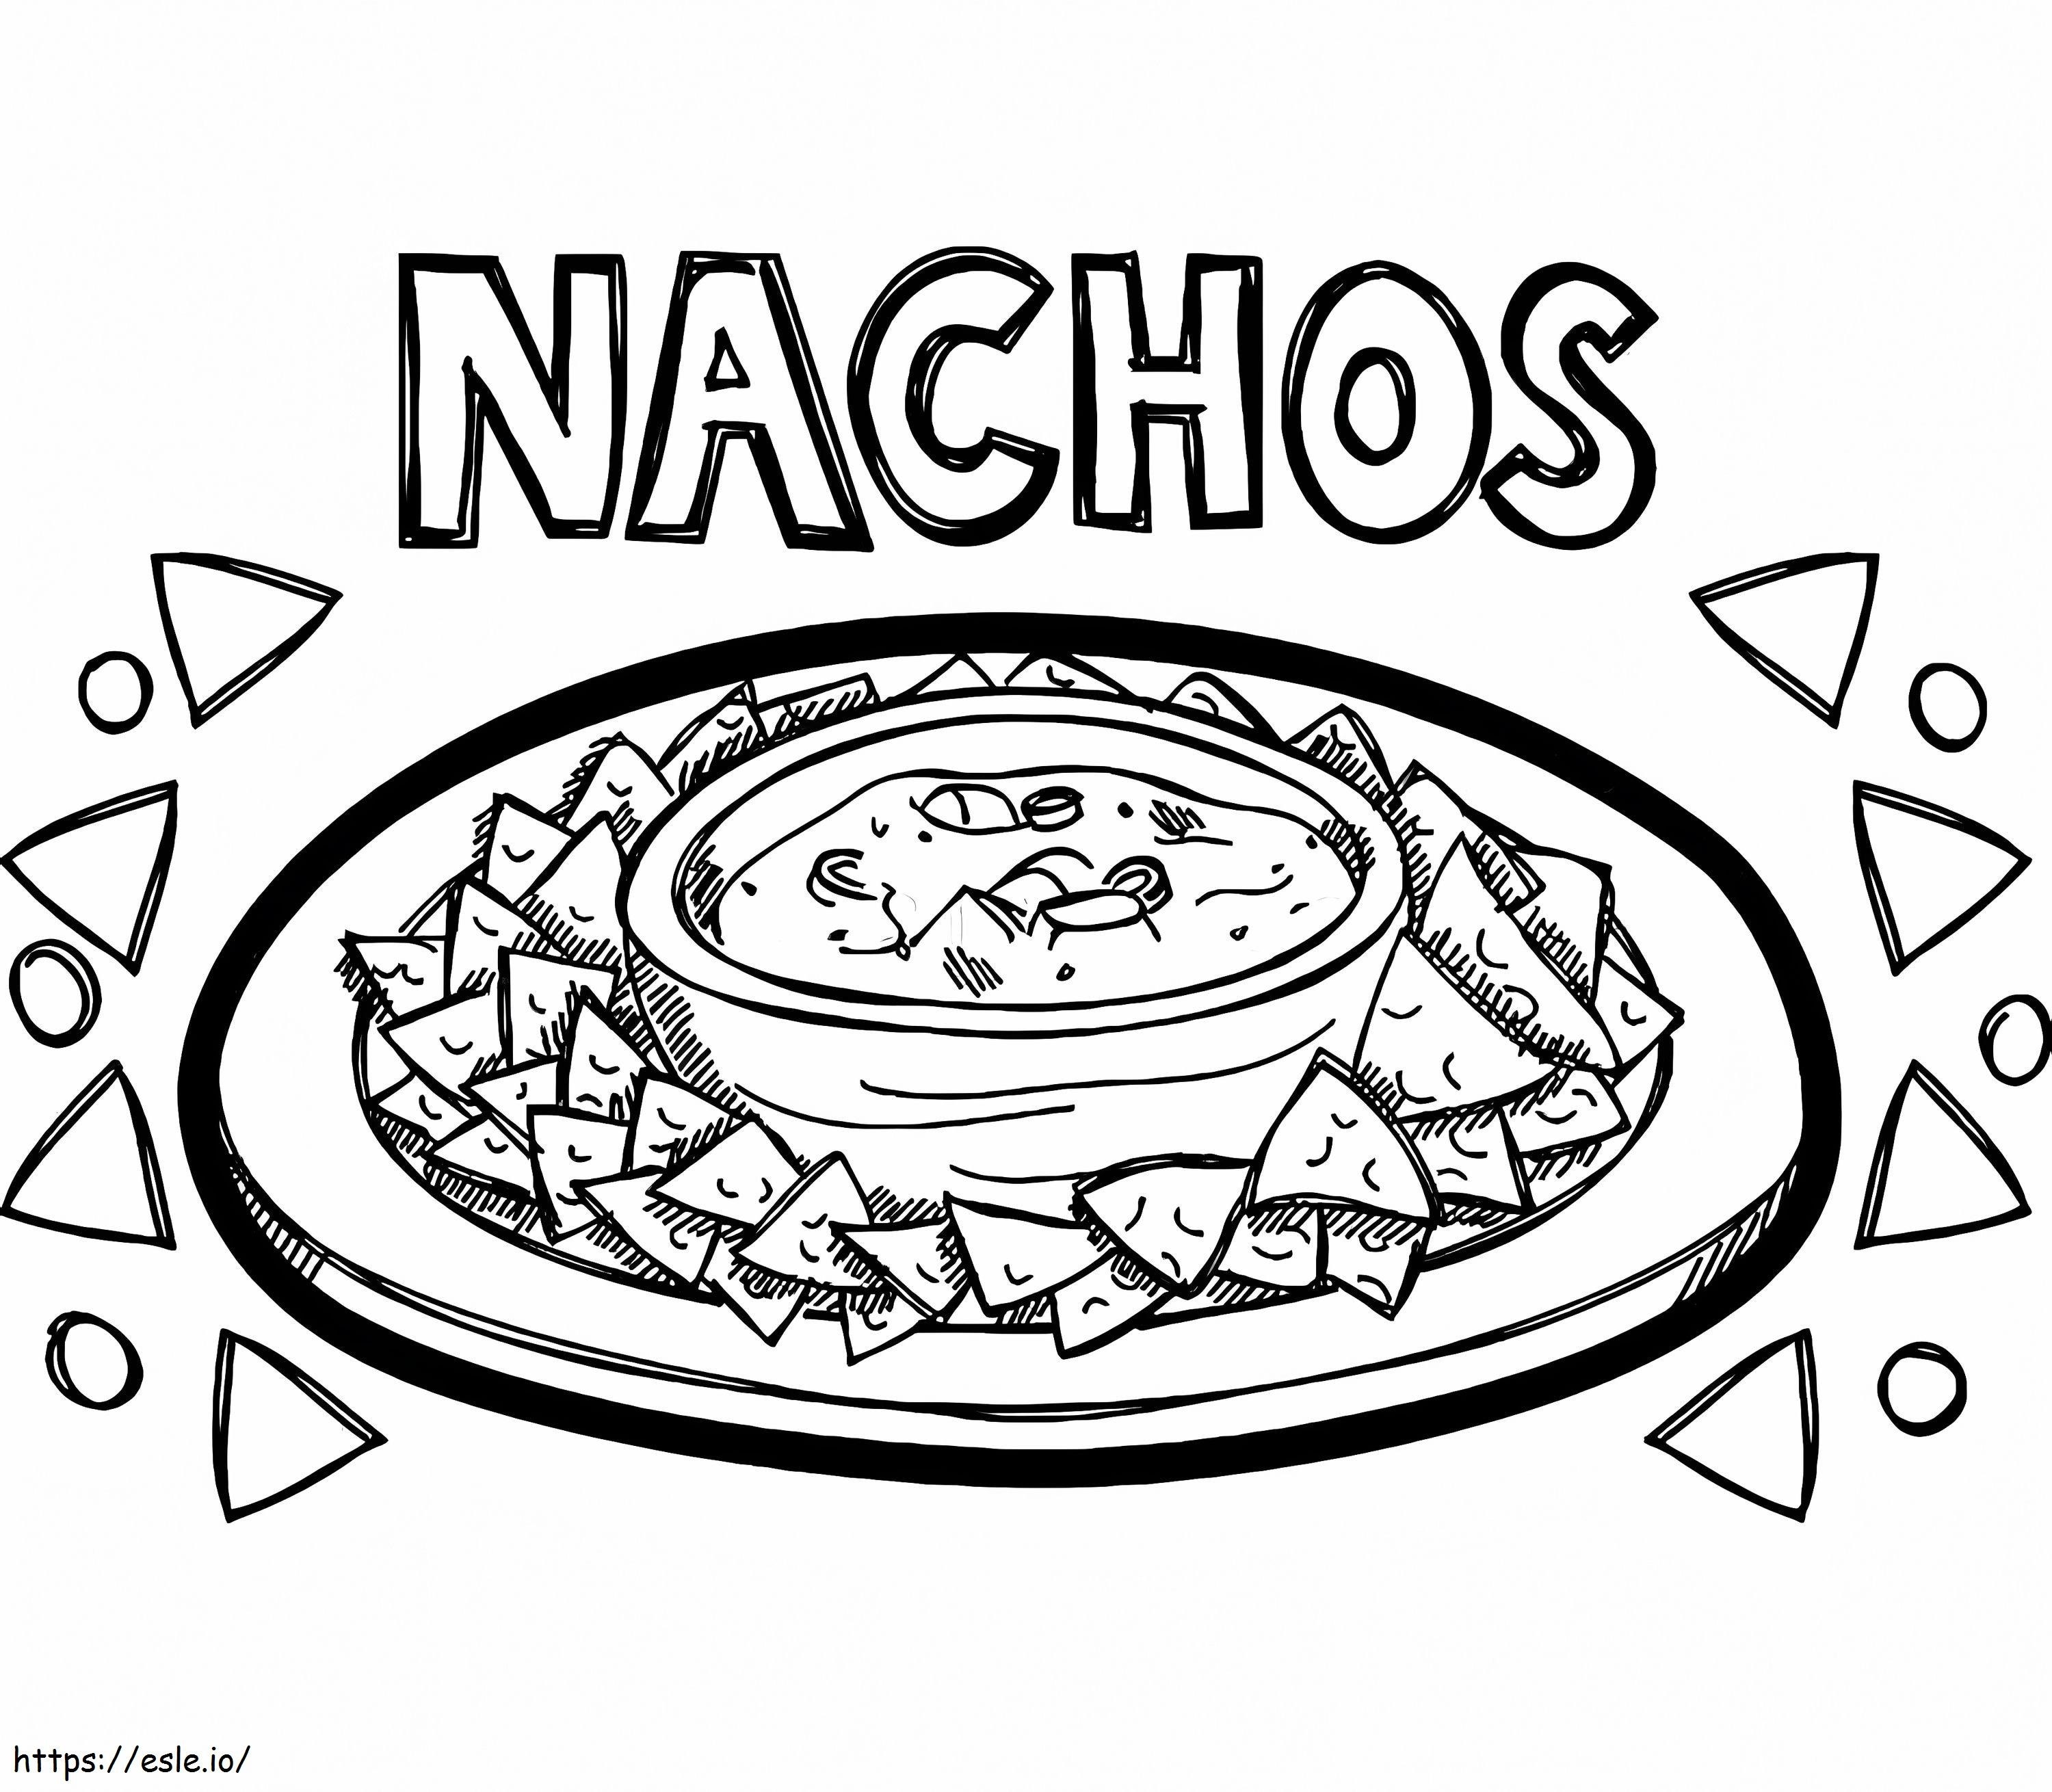 Delicious Nachos coloring page